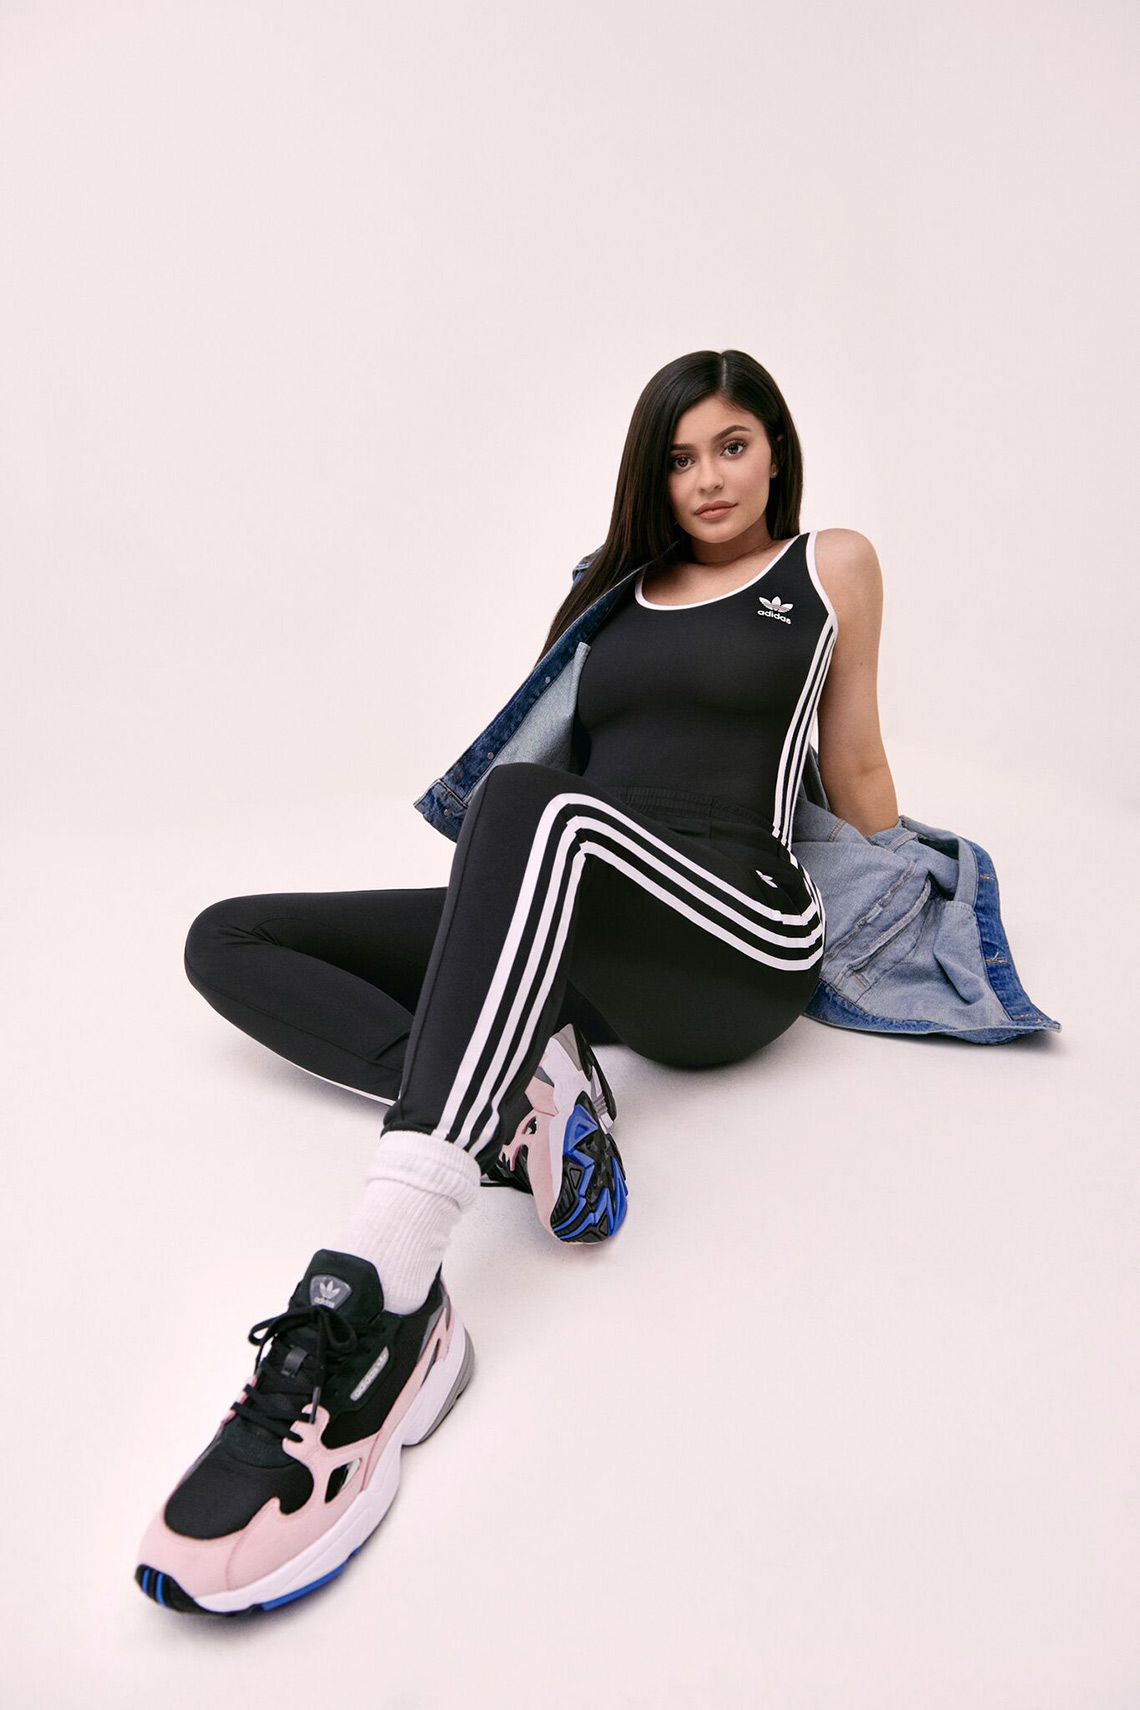 Kylie Jenner adidas Falcon Photos + 